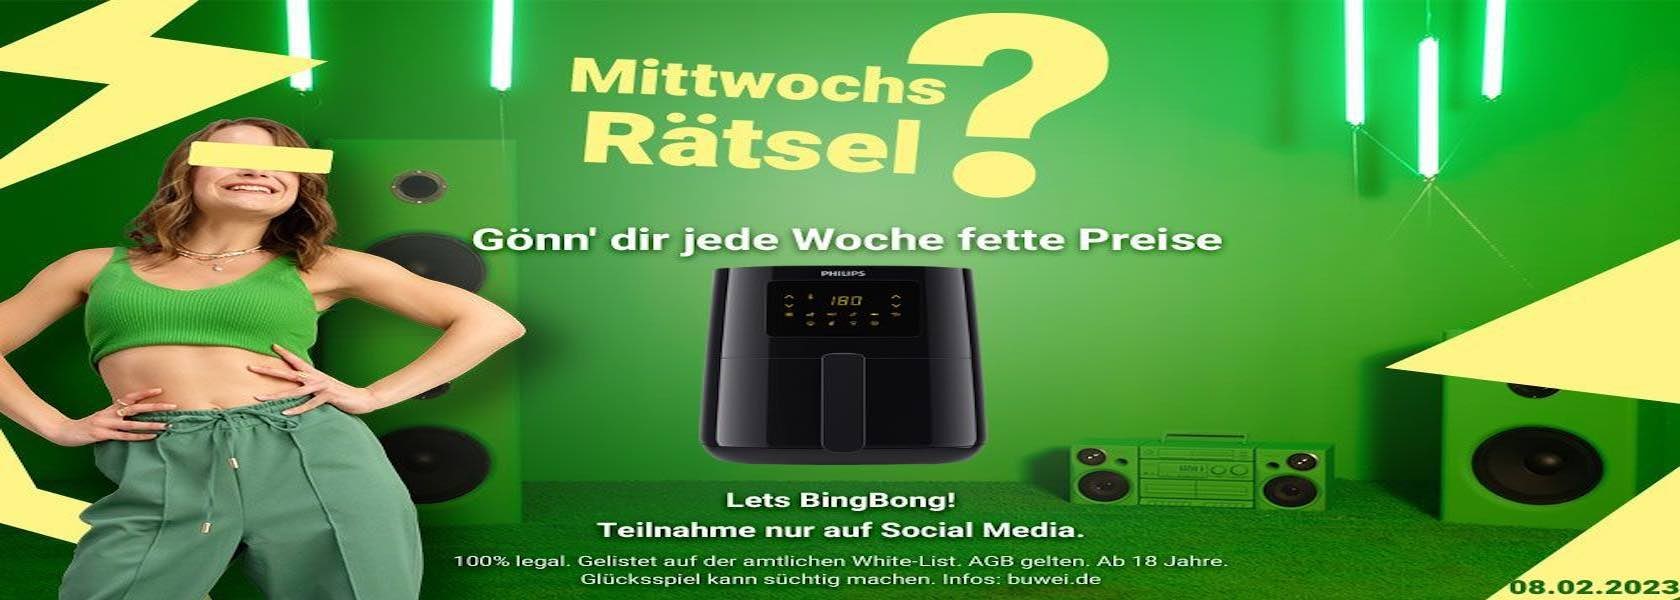 mittwochs-raetsel-08022023-1680x600